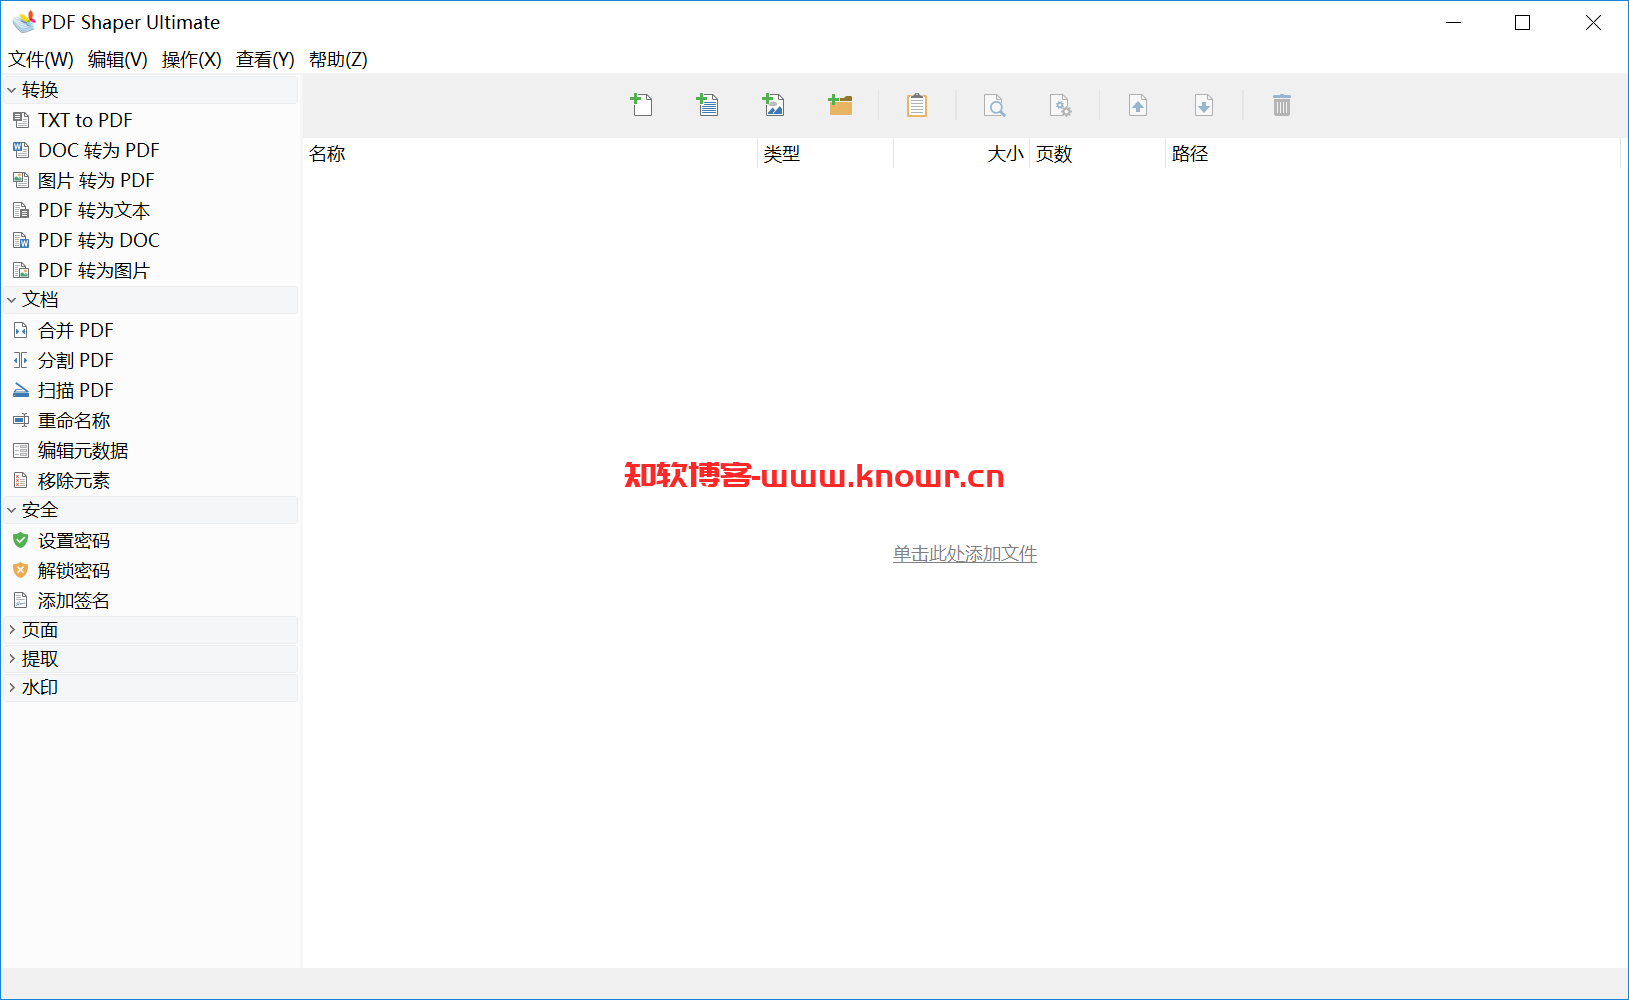 PDF工具箱 PDF Shaper Ultimate v14.0.0 单文件破解版